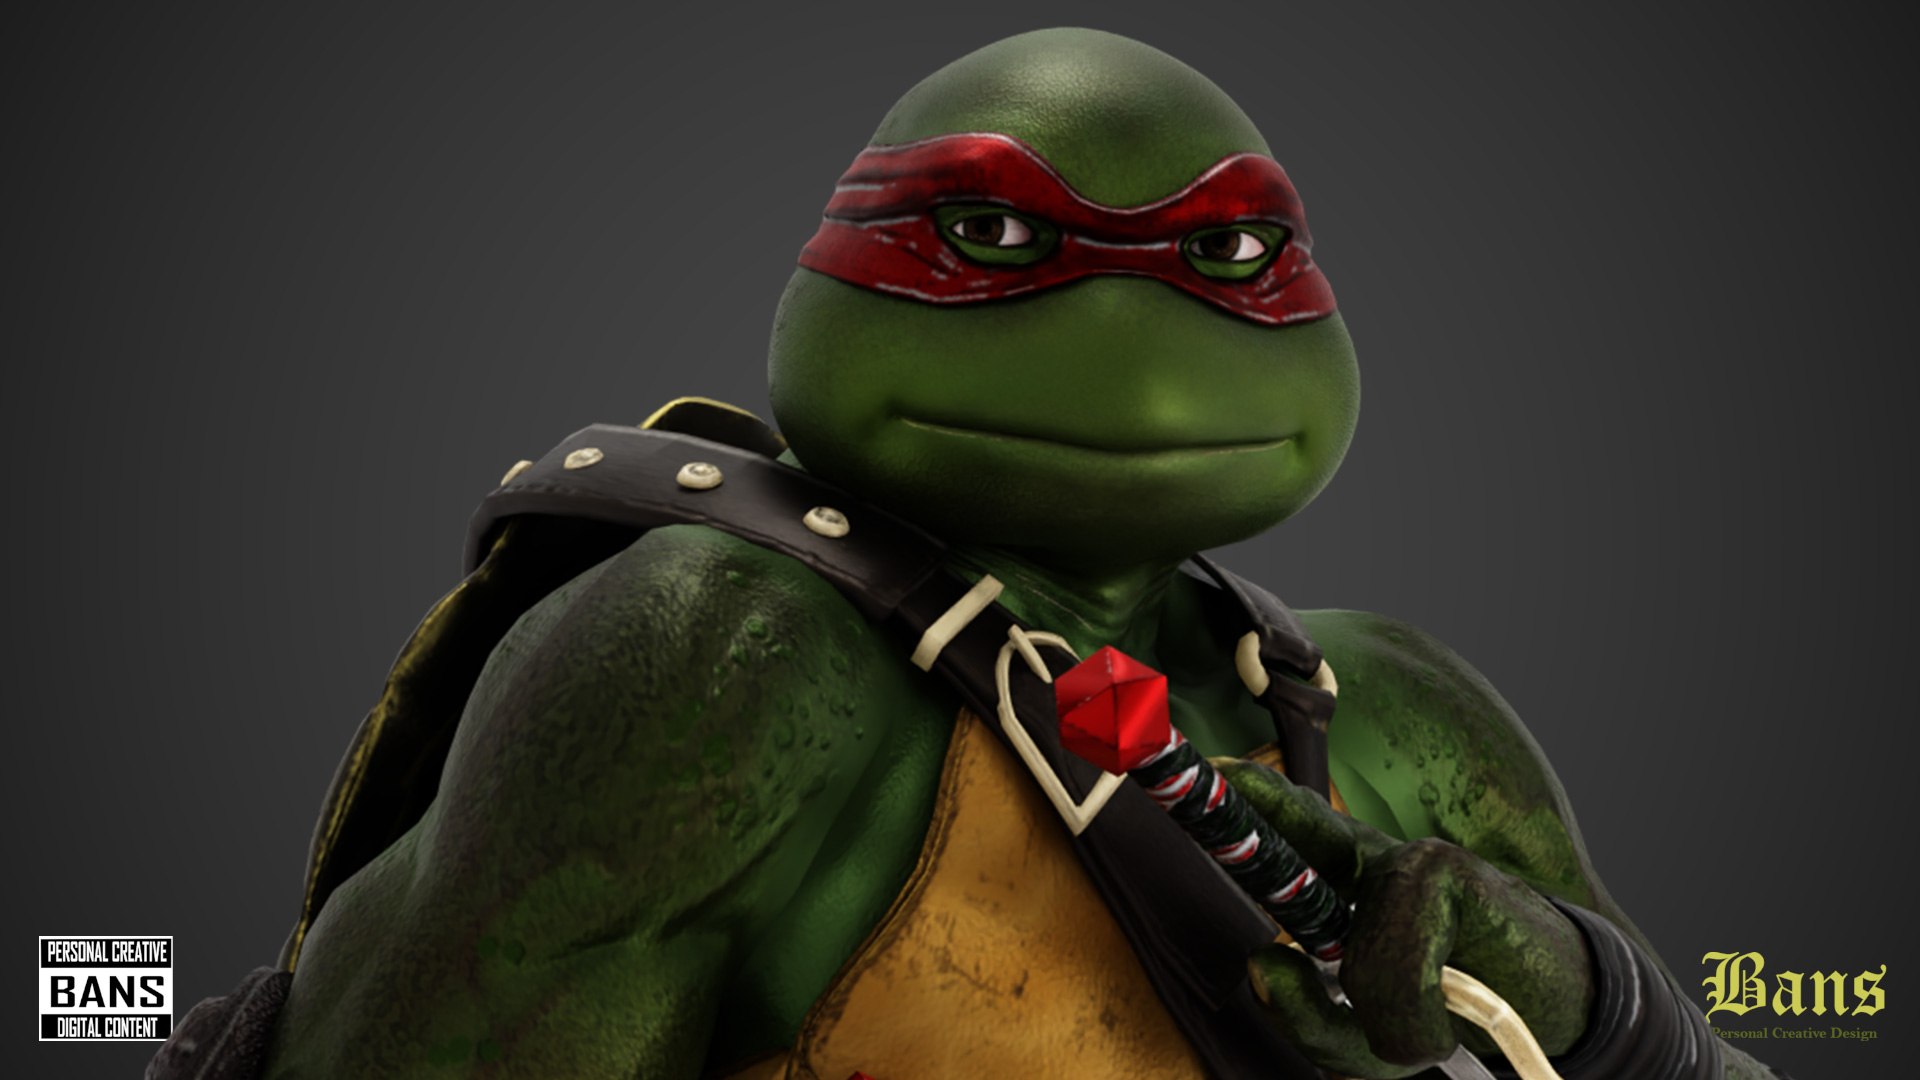 3D model Raphael Teenage Mutant Ninja Turtle VR / AR / low-poly